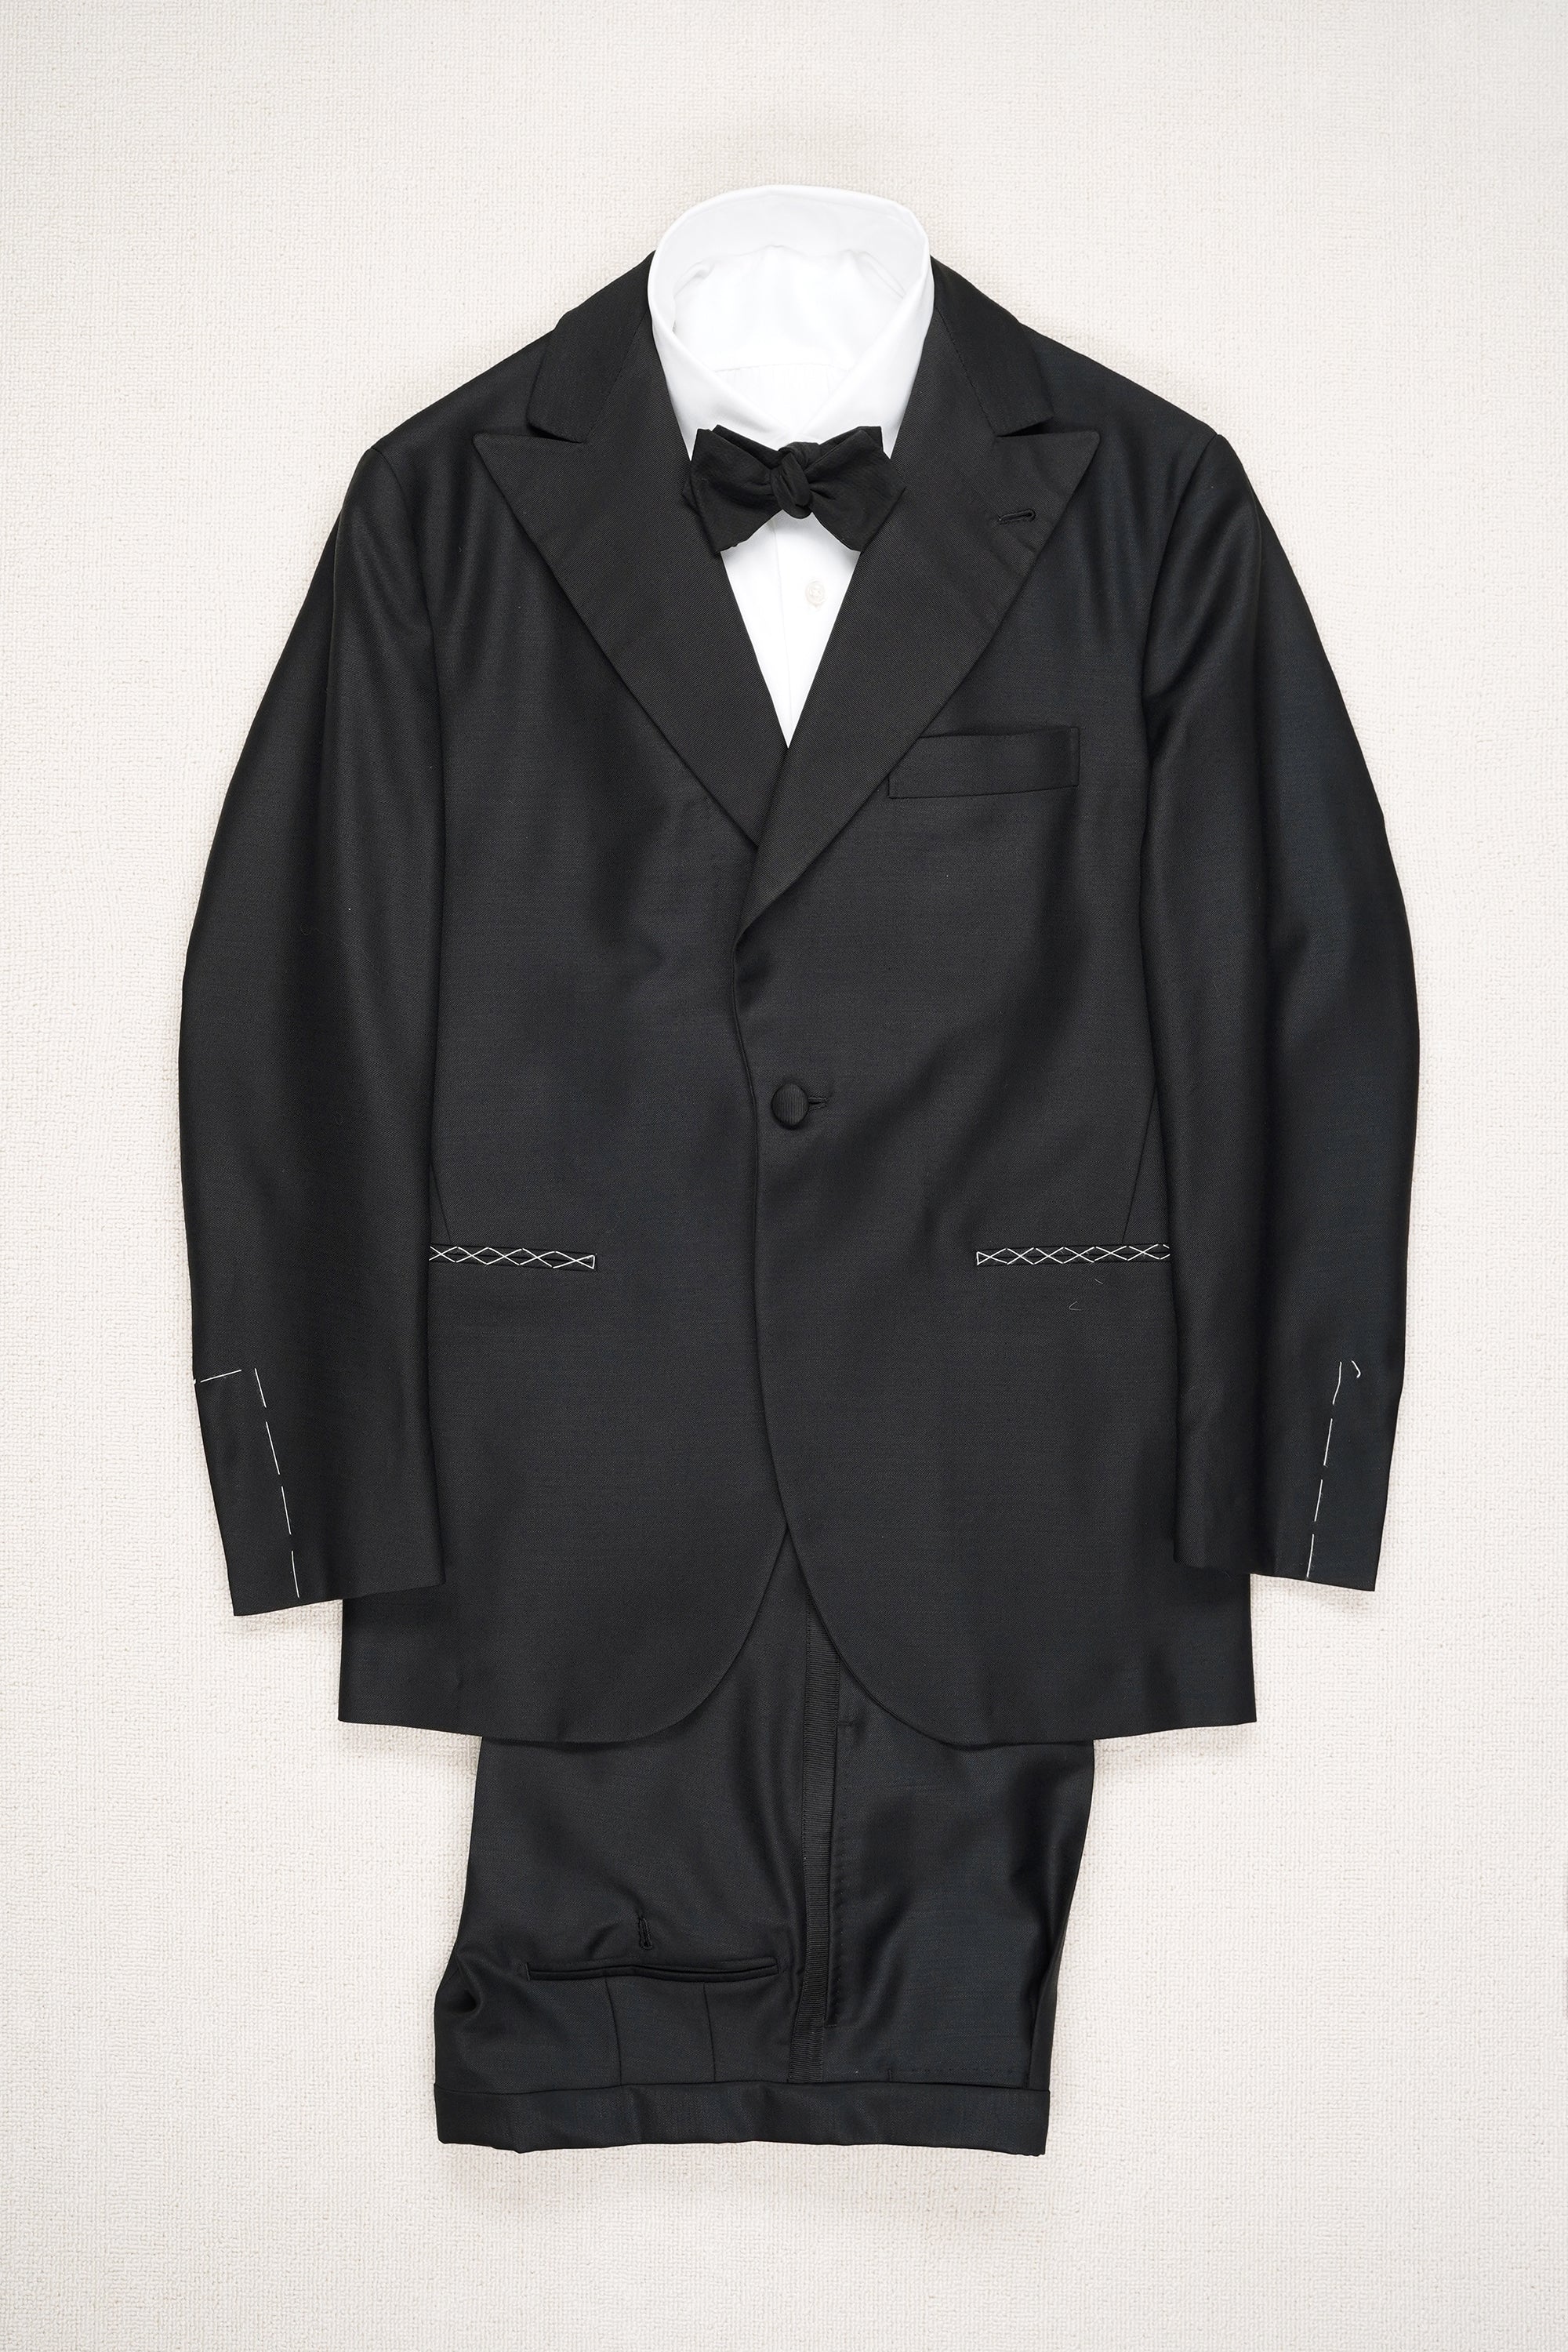 Liverano & Liverano Black Wool Tuxedo Suit